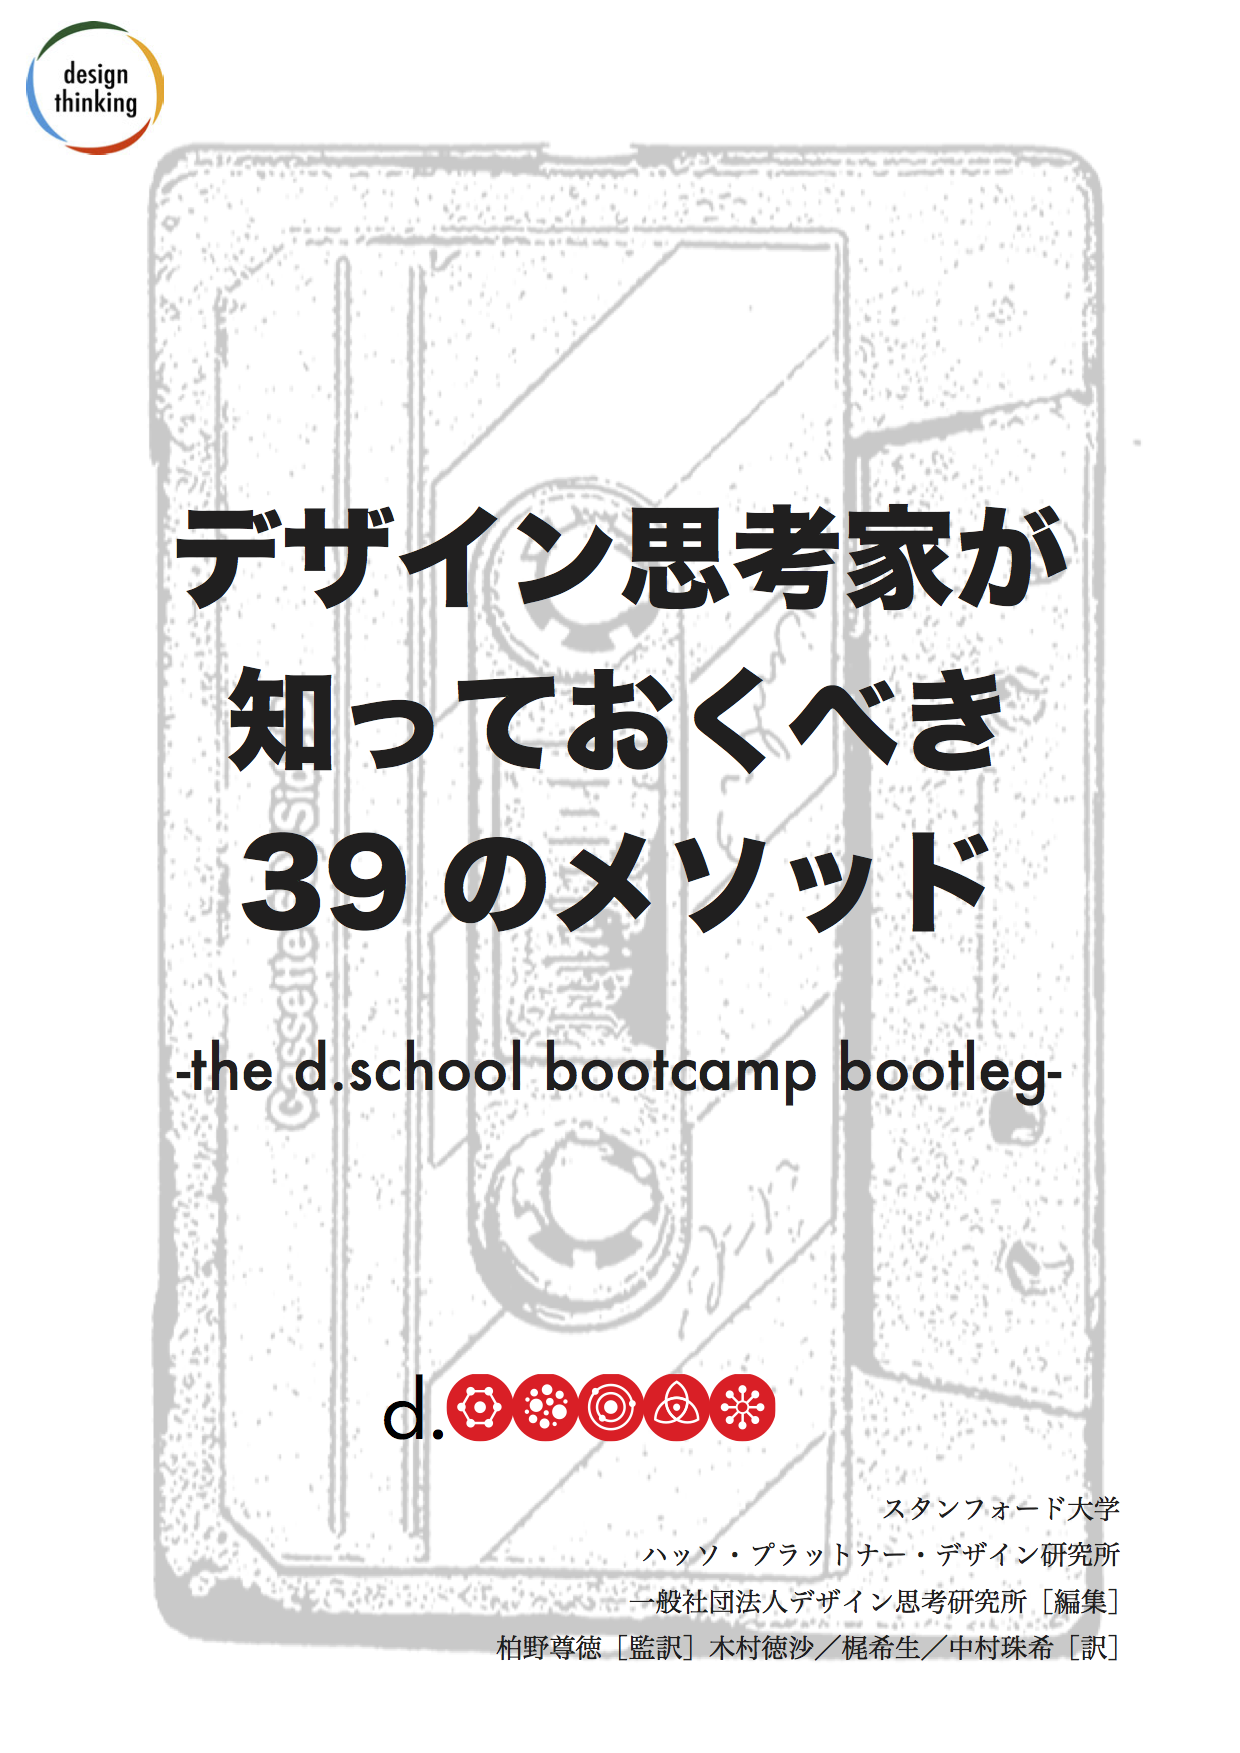 デザイン思考家が知っておくべき39のメソッド -the d.school bootcamp bootleg-